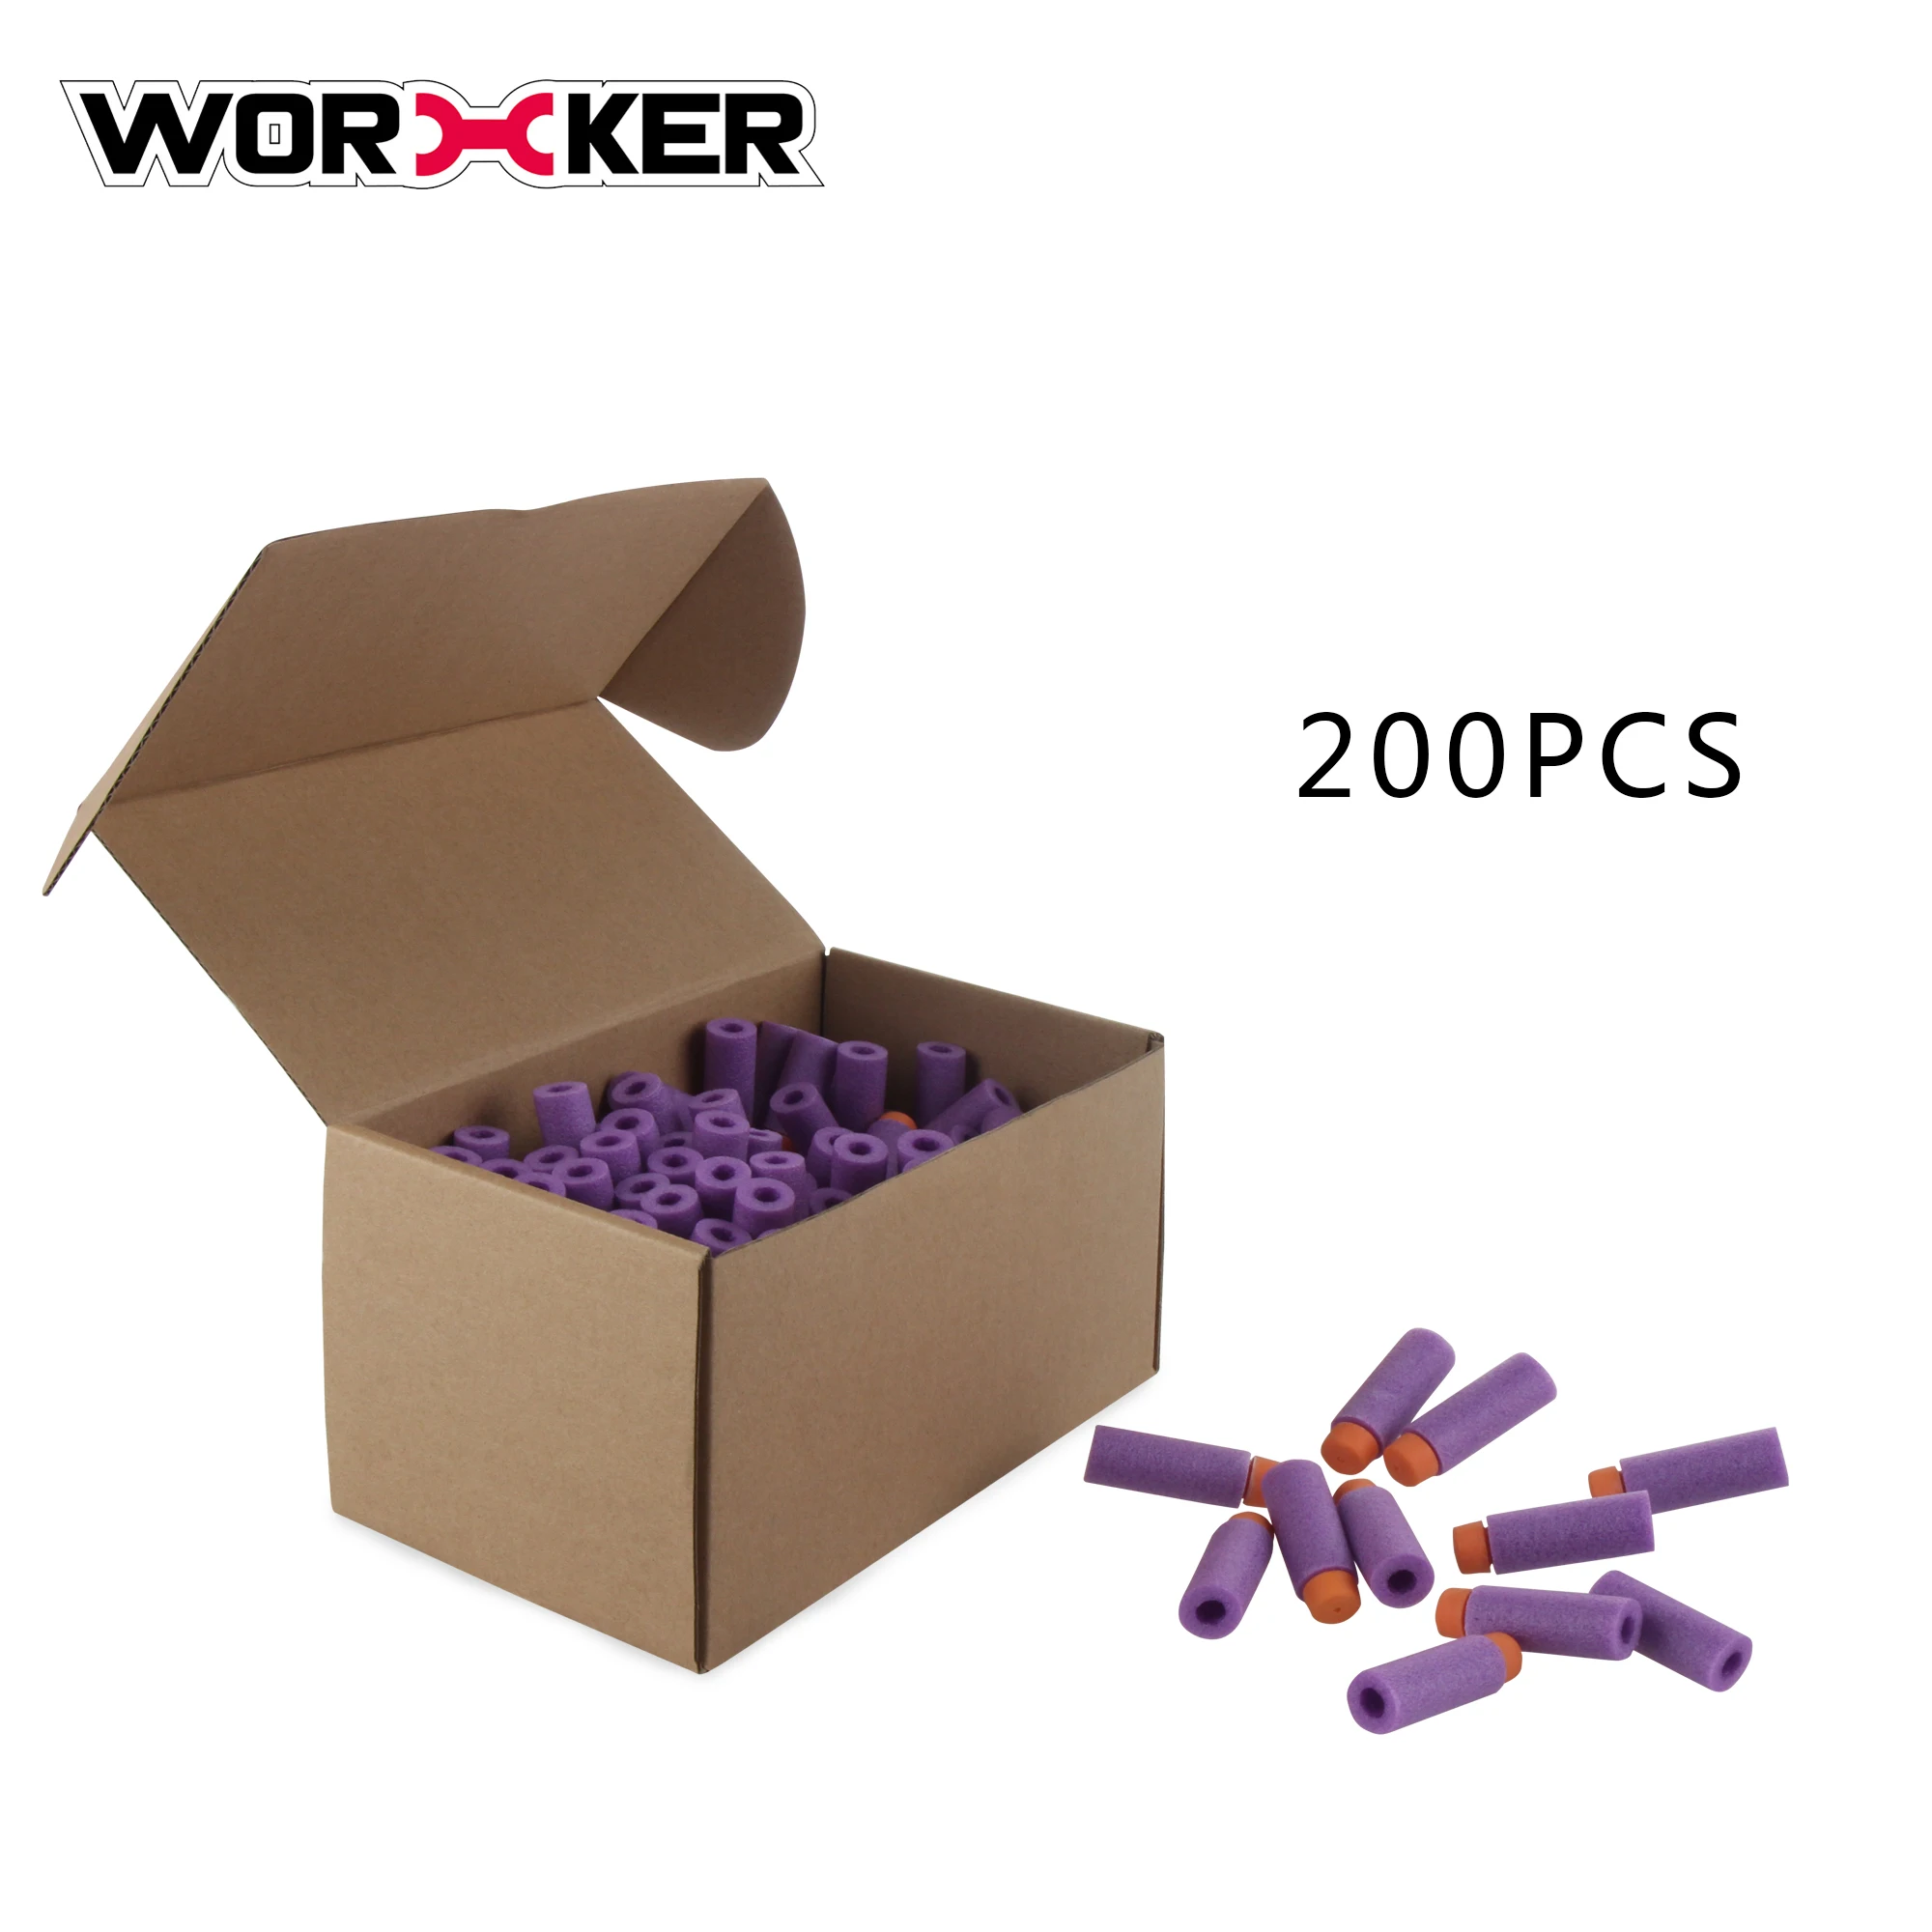 Worker Mod 200PCS Short Darts Stefan Gen3 Foam Purple Orange for Nerf Modify Toy 